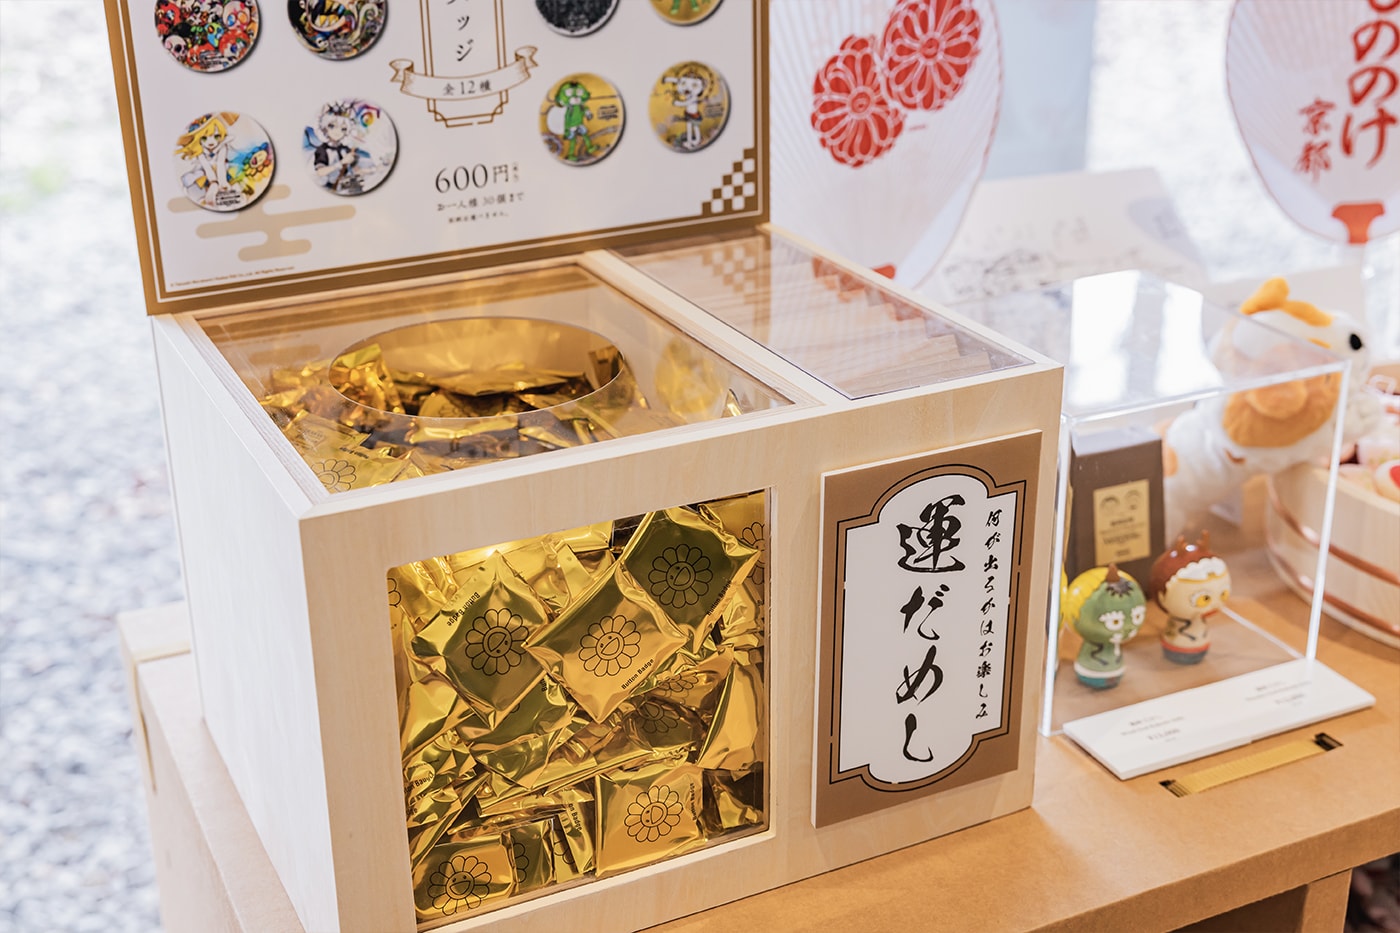 Takashi Murakami Mononoke Kyoto Exhibition Interview Feature Info